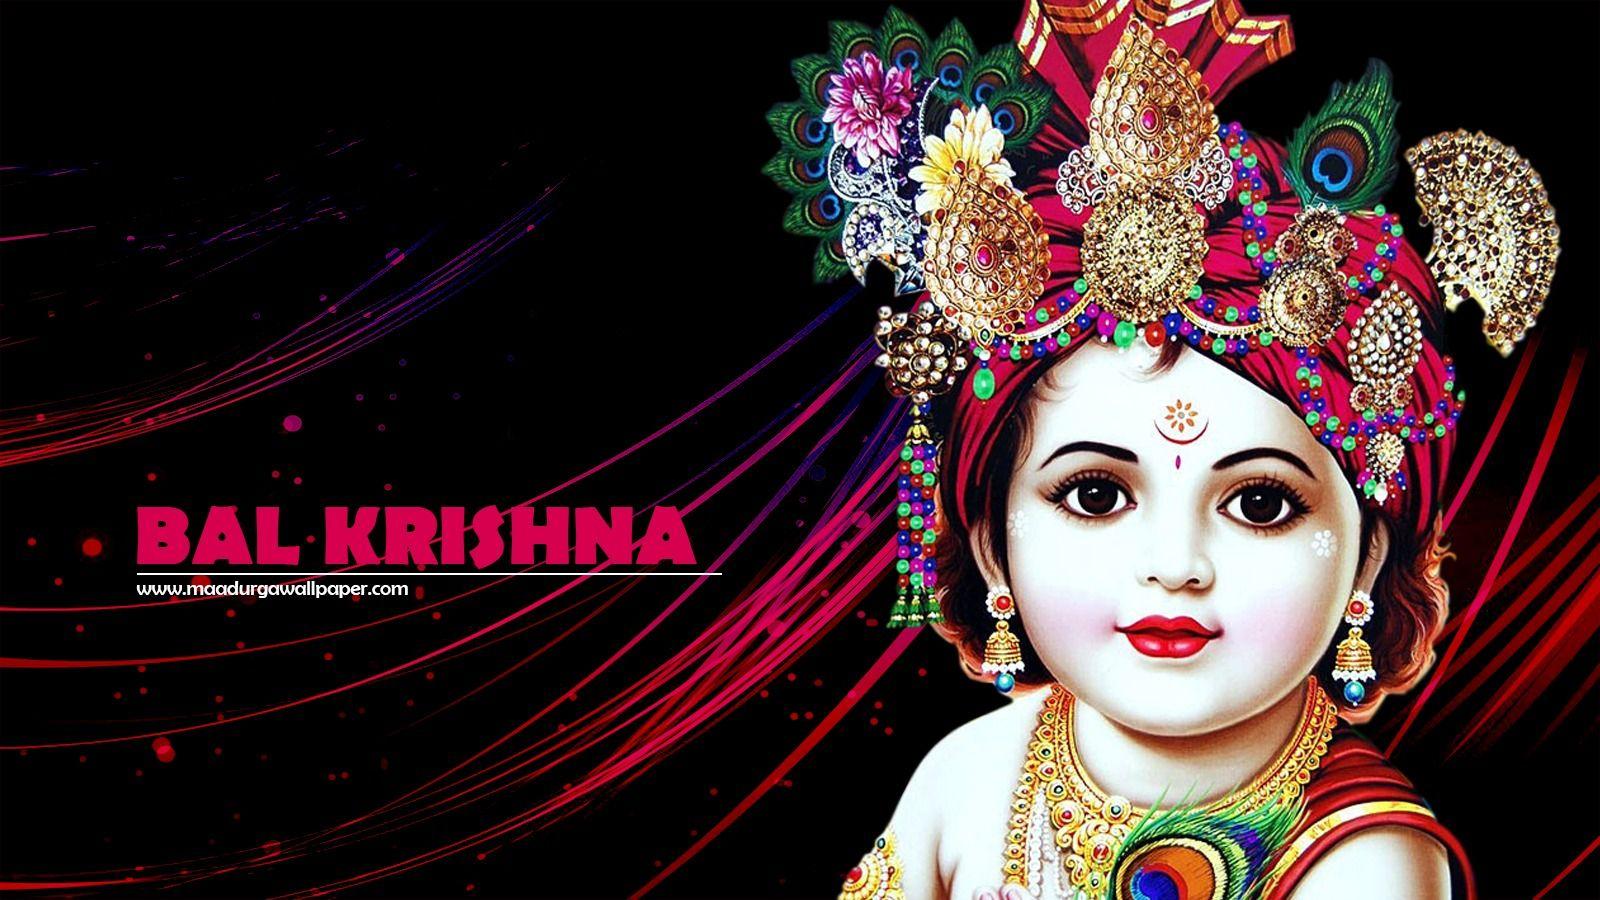 4K wallpaper: Shri Krishna Lord Krishna Images Hd 1080p Free Download